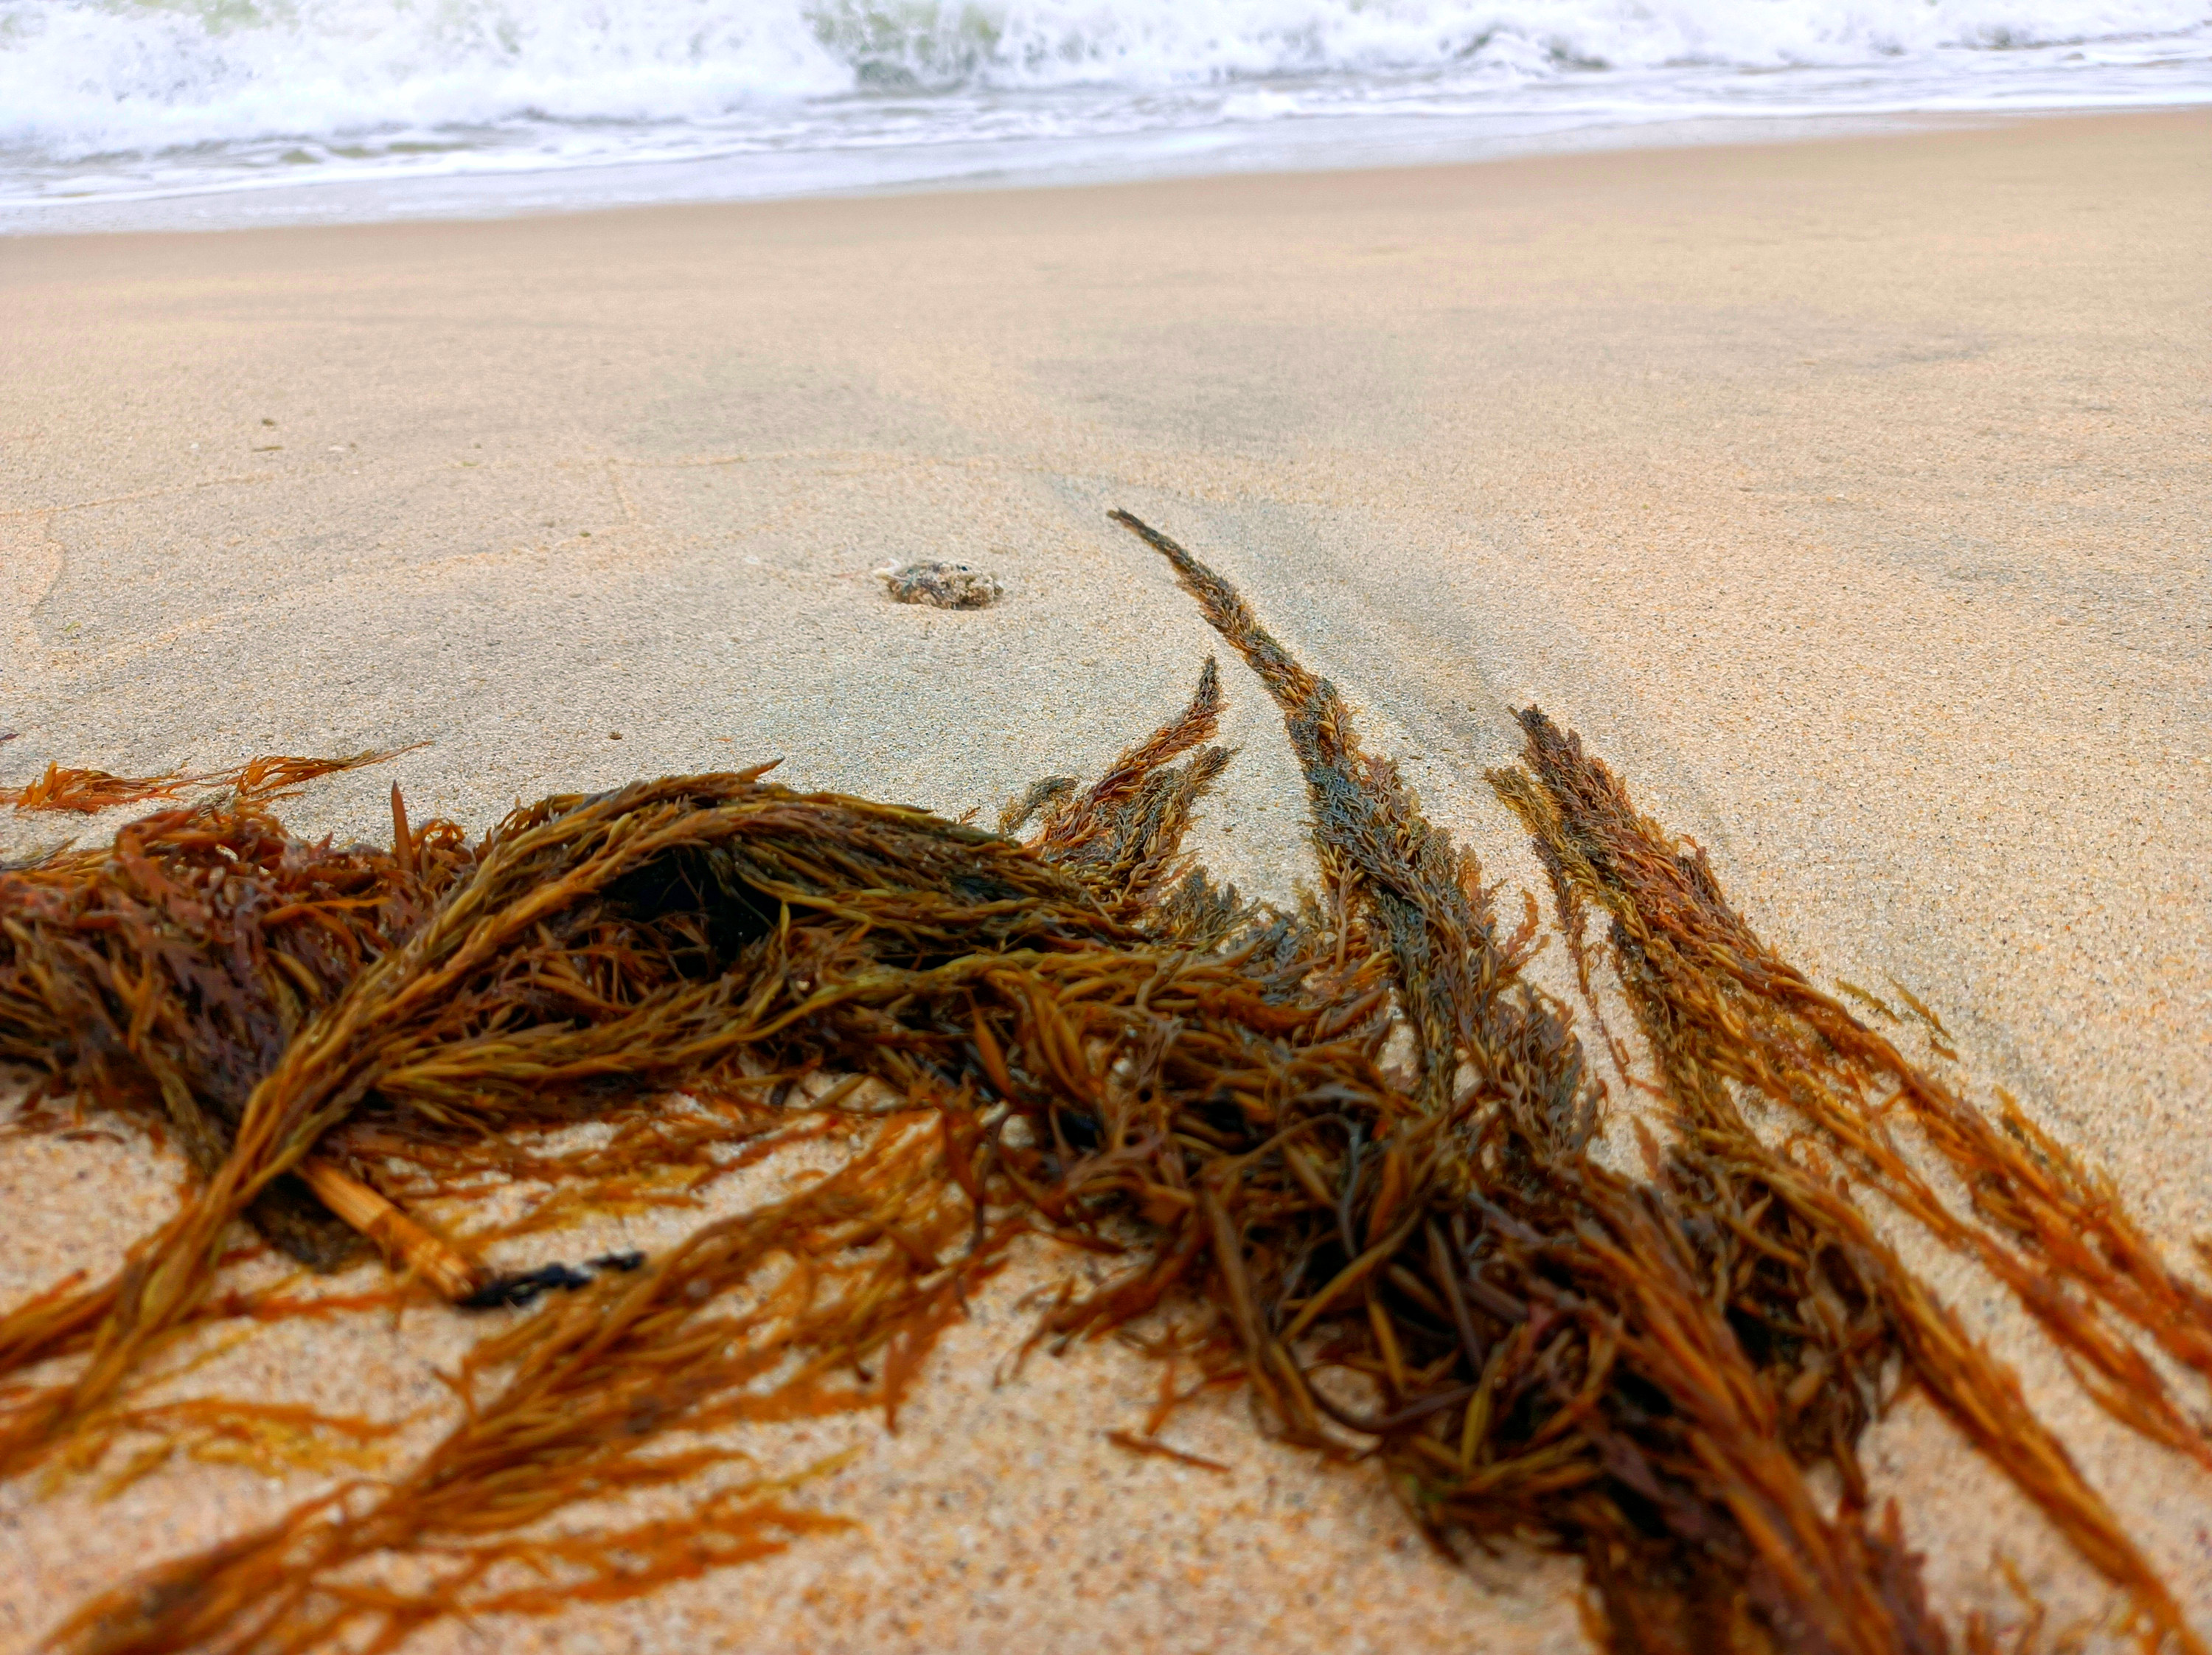 臺灣百種海洋生物-大型海藻與海草-羊栖菜-臺灣百種海洋生物-大型海藻與海草 - 海洋委員會海洋保育署全球資訊網